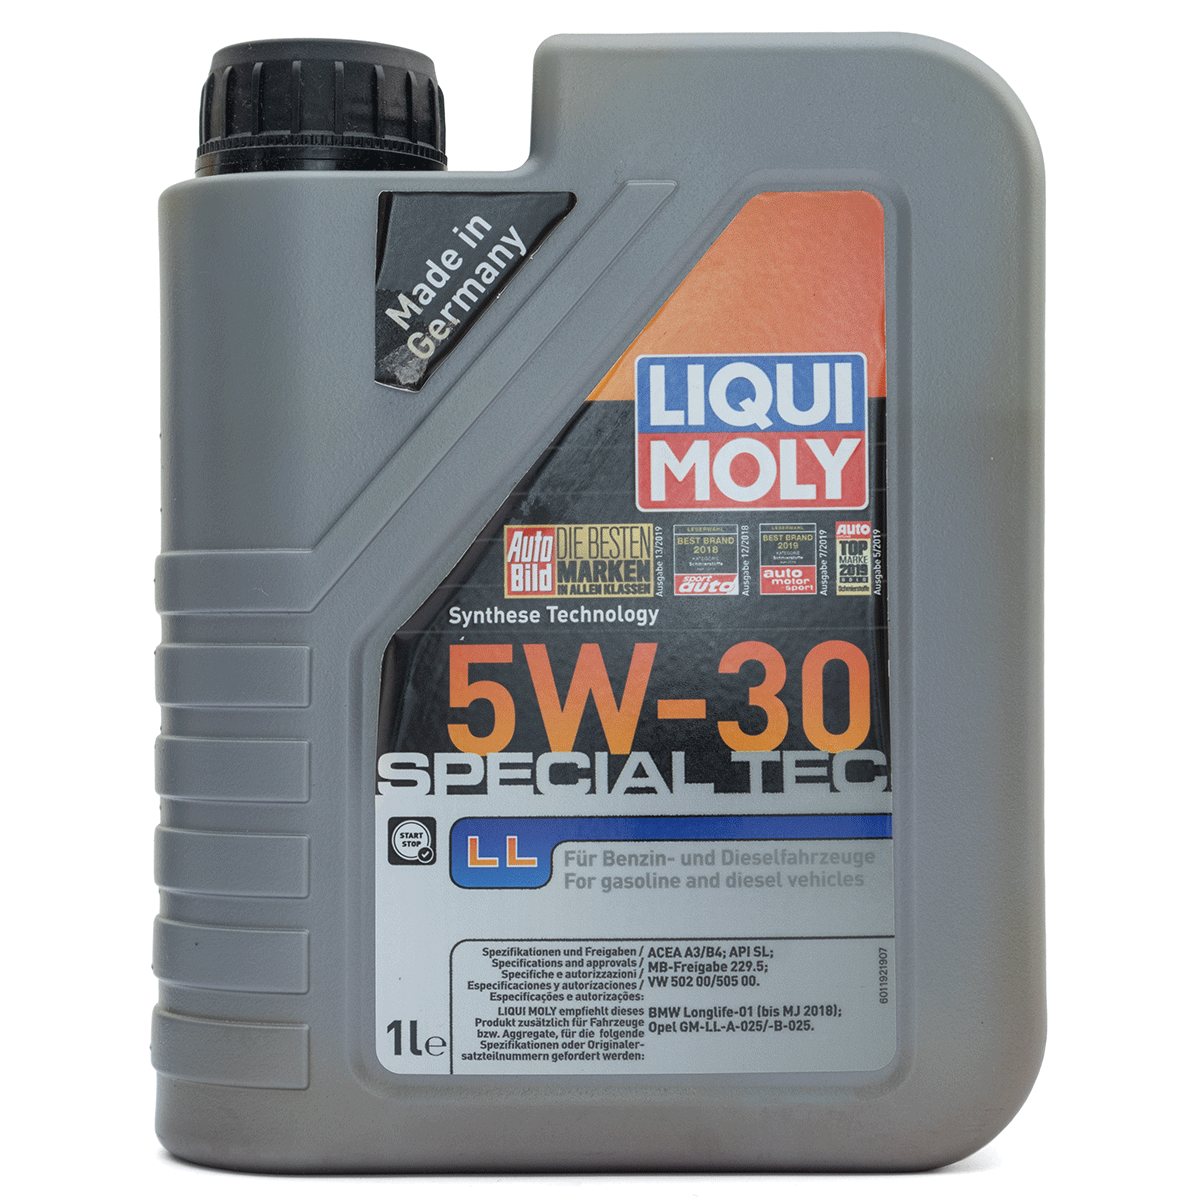 Aceite Liqui Moly Molygen 5W-30